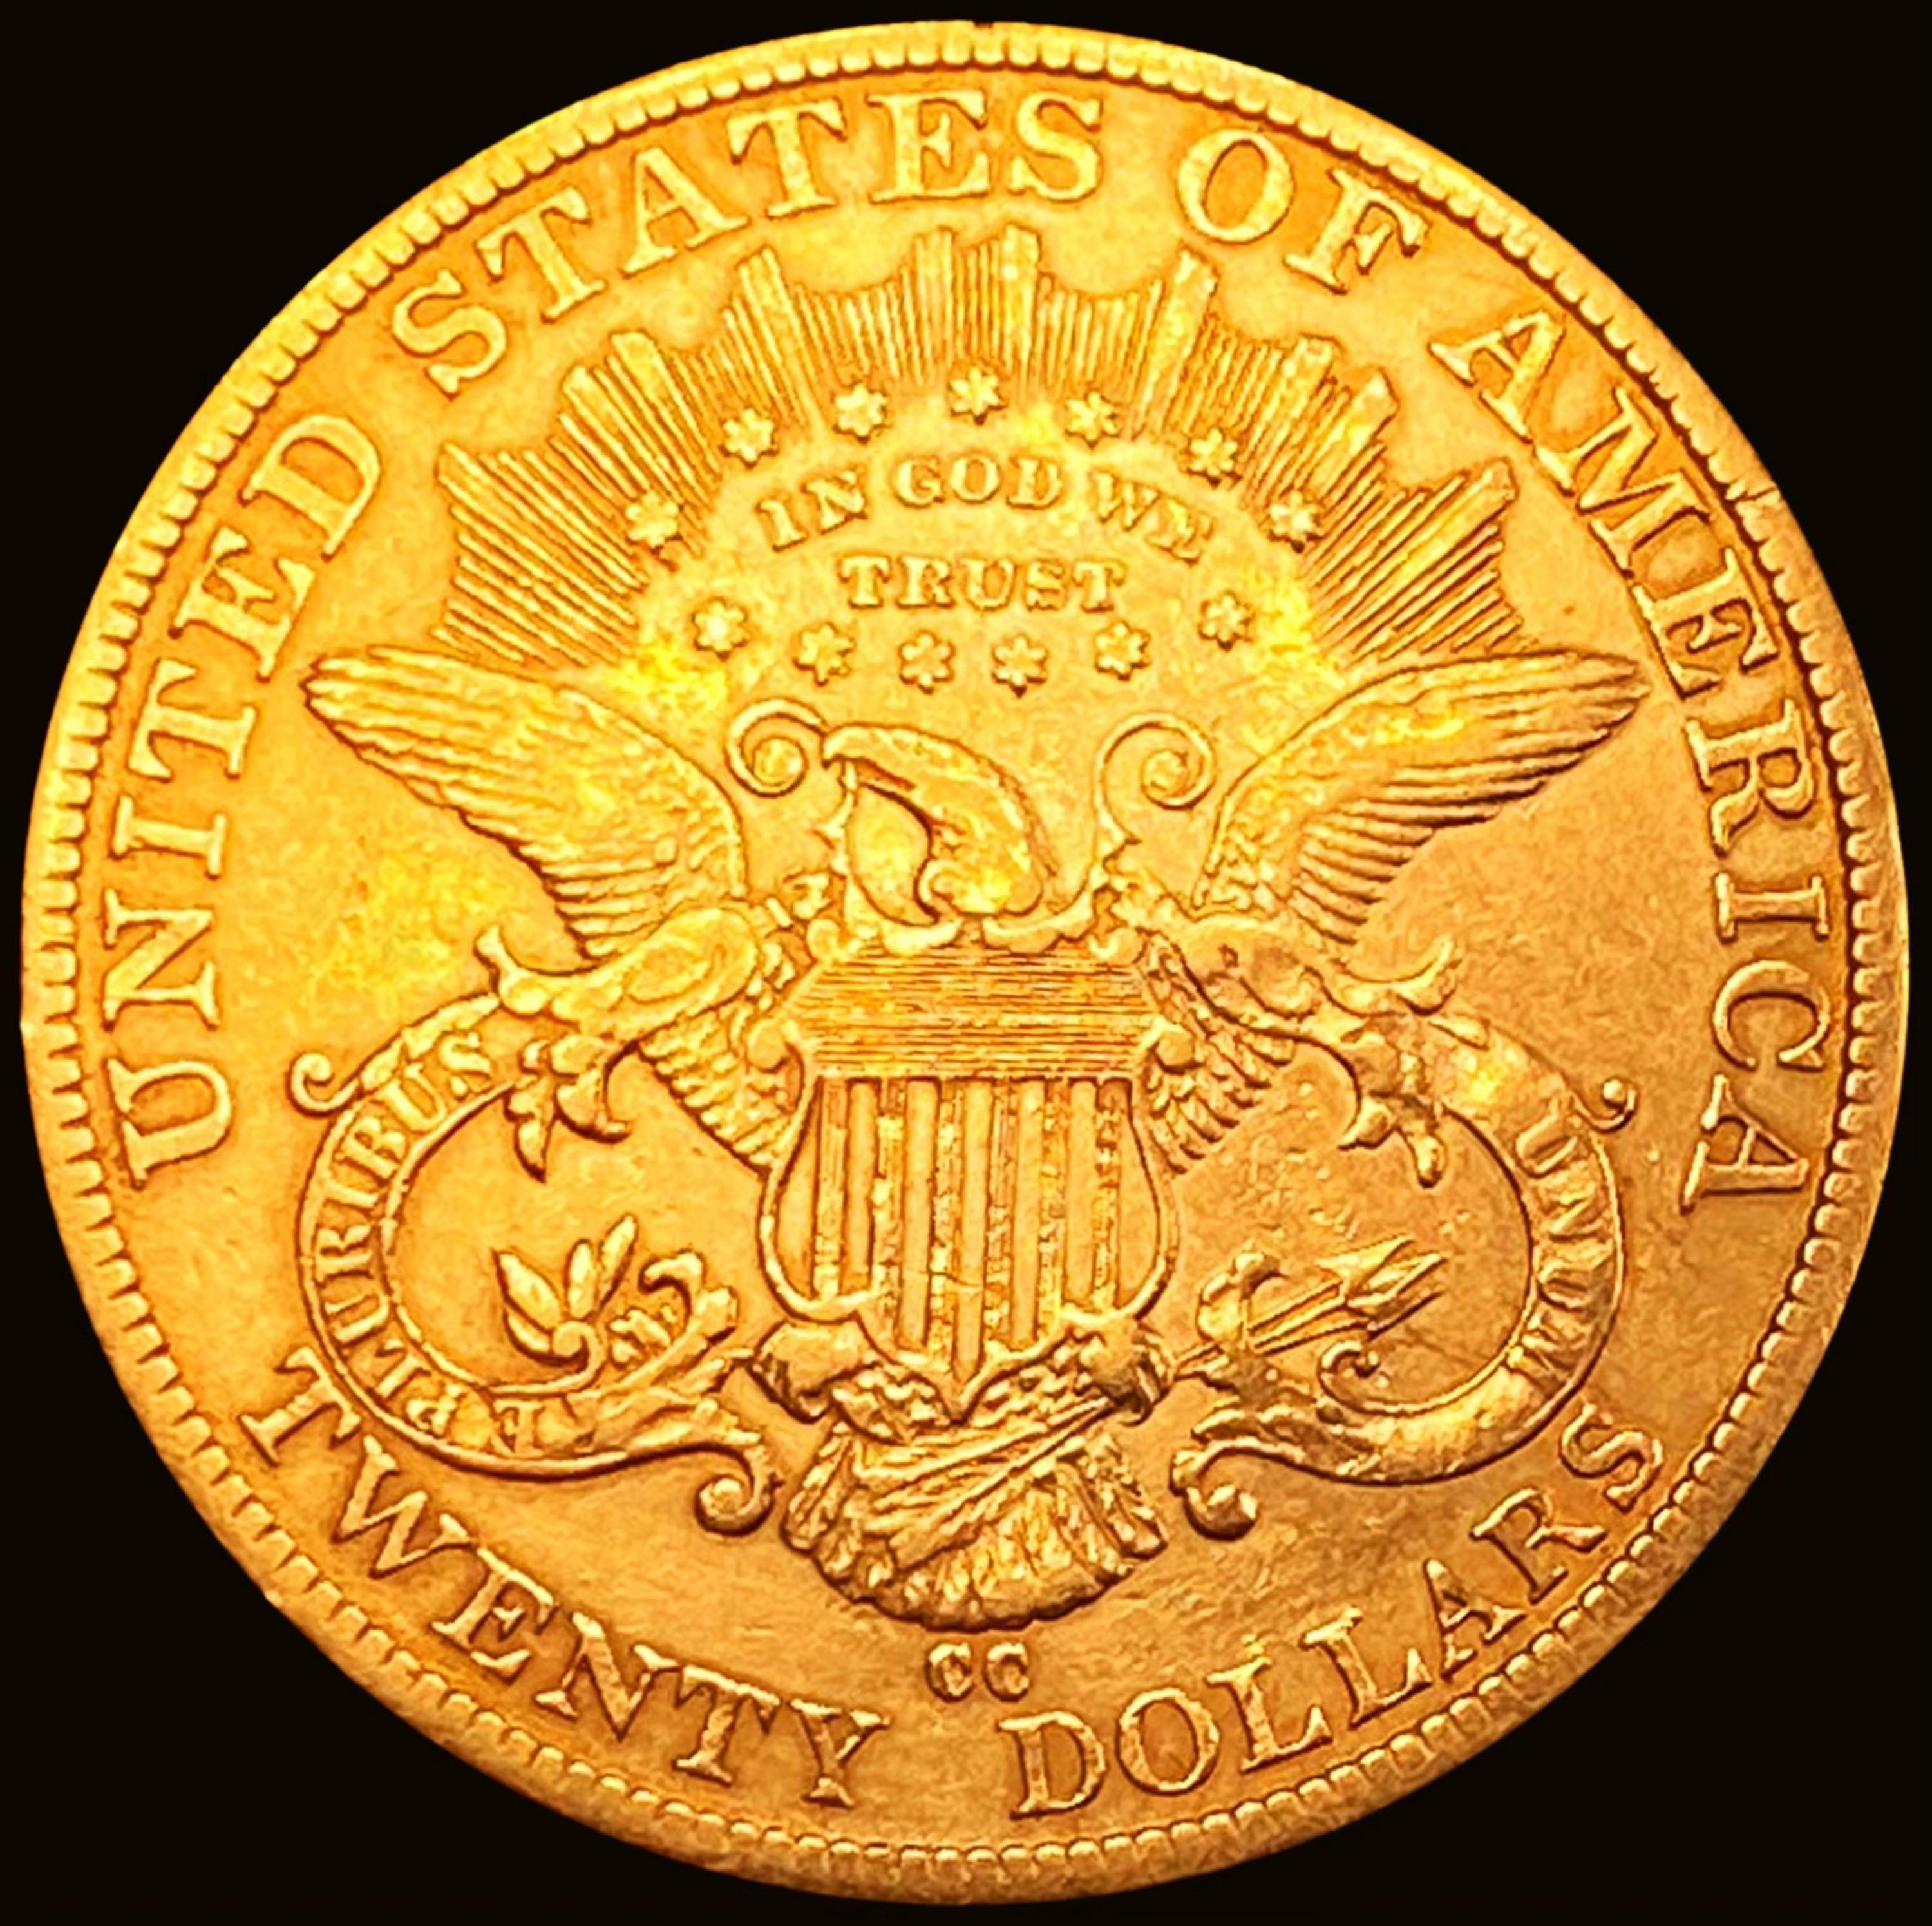 1884-CC $20 Gold Double Eagle CHOICE AU